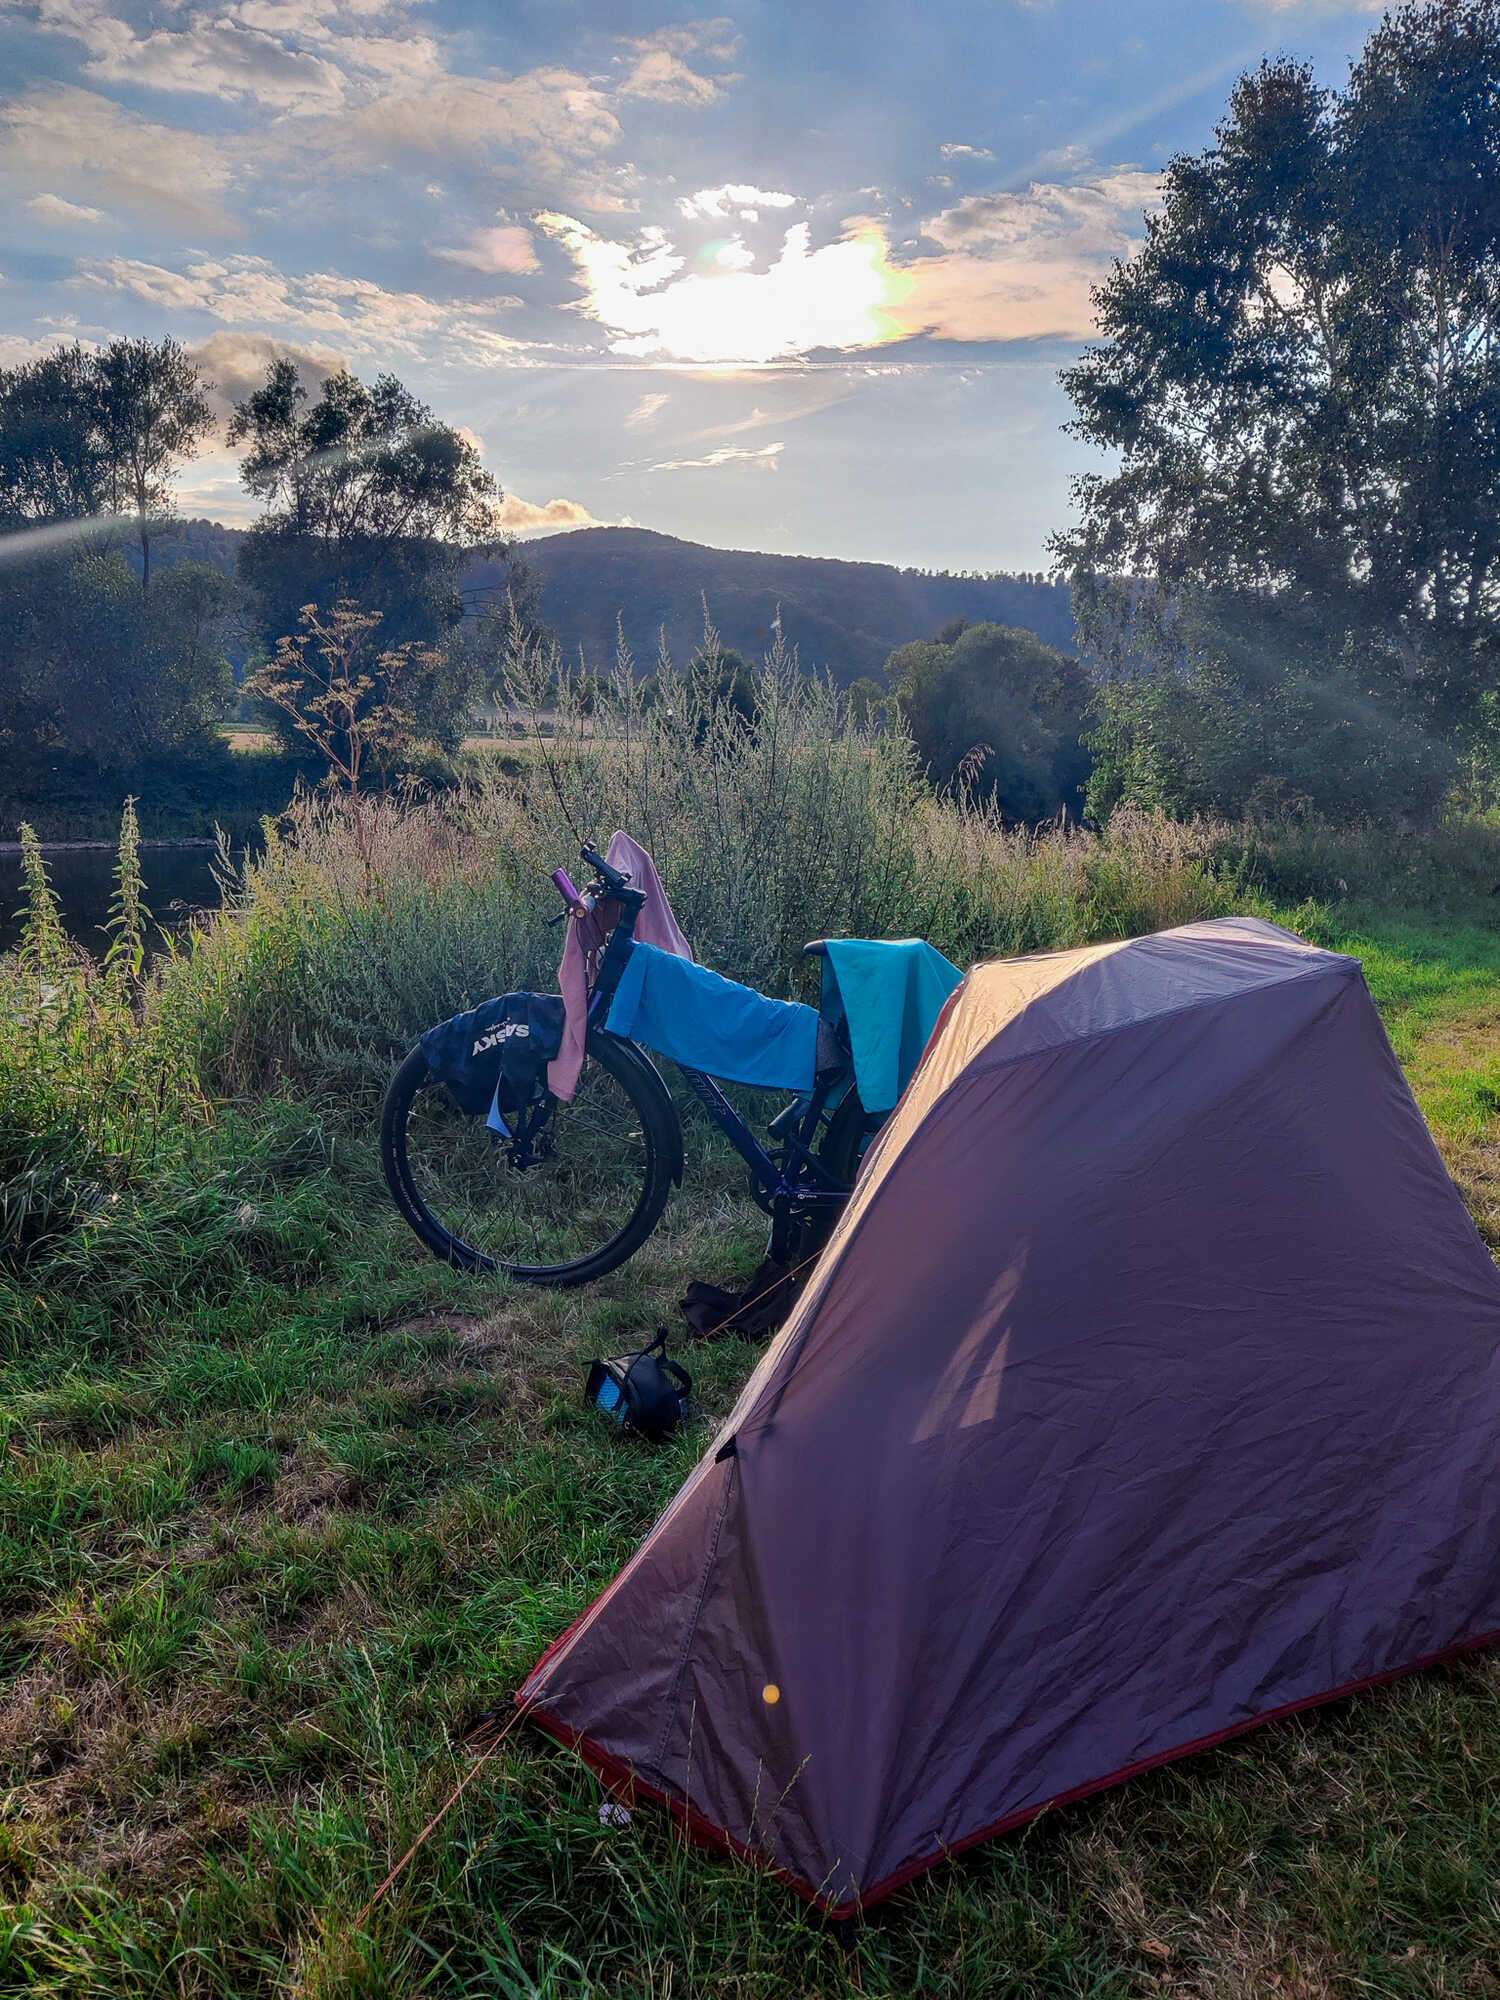 Radreisen: Zelt und Fahrrad im Abendlicht